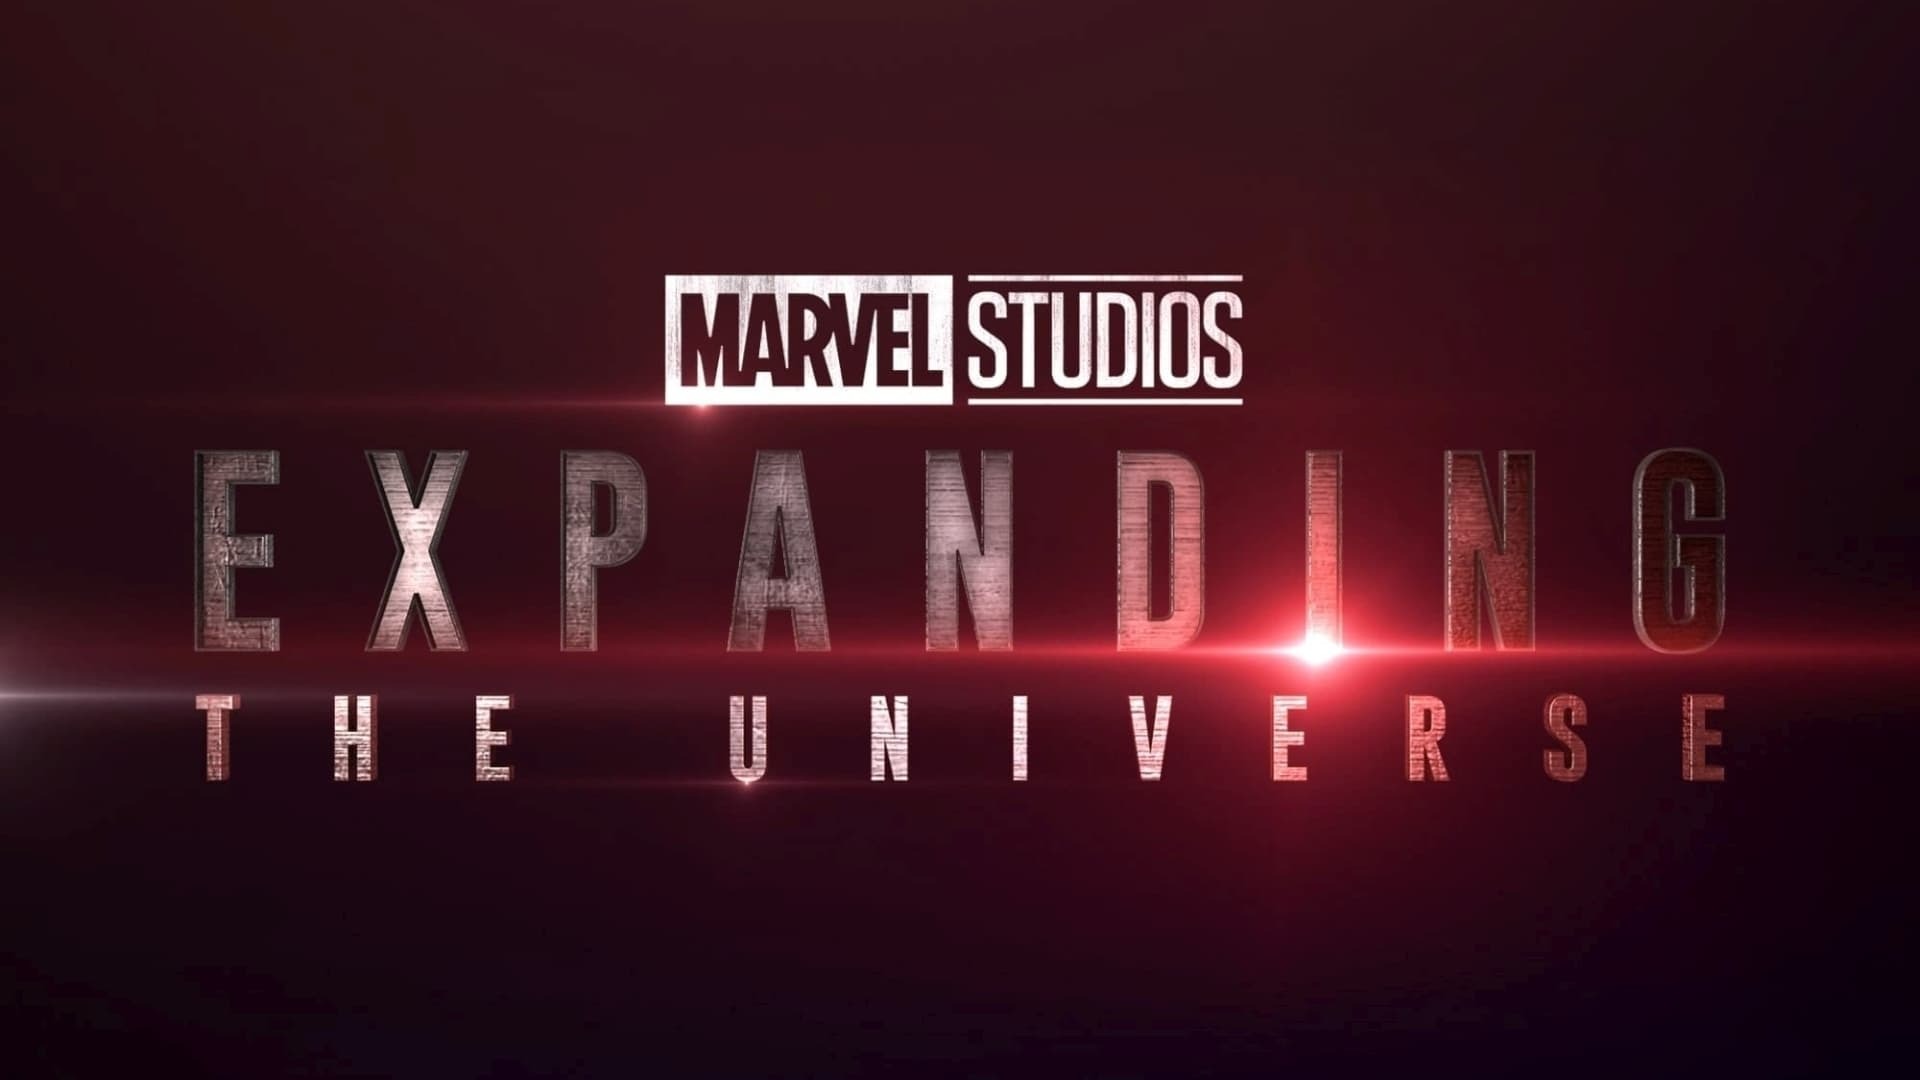 სტუდია მარველი: სამყაროს გაფართოება / Marvel Studios: Expanding the Universe